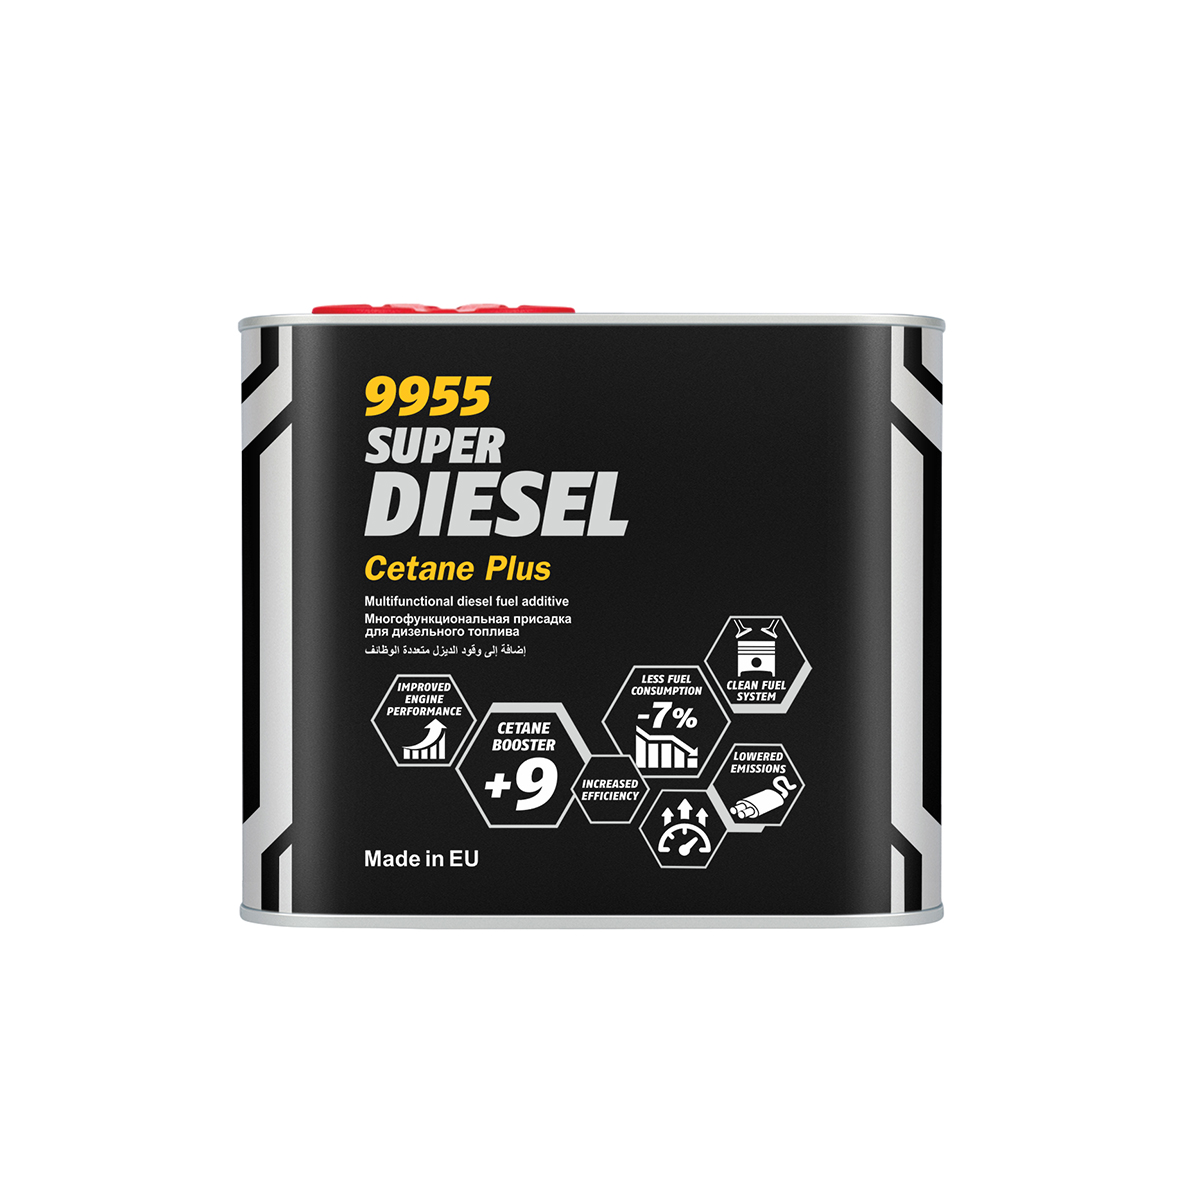 Tryk her og se de billige priser på Mannol Super Diesel Cetan Plus - 500 ml